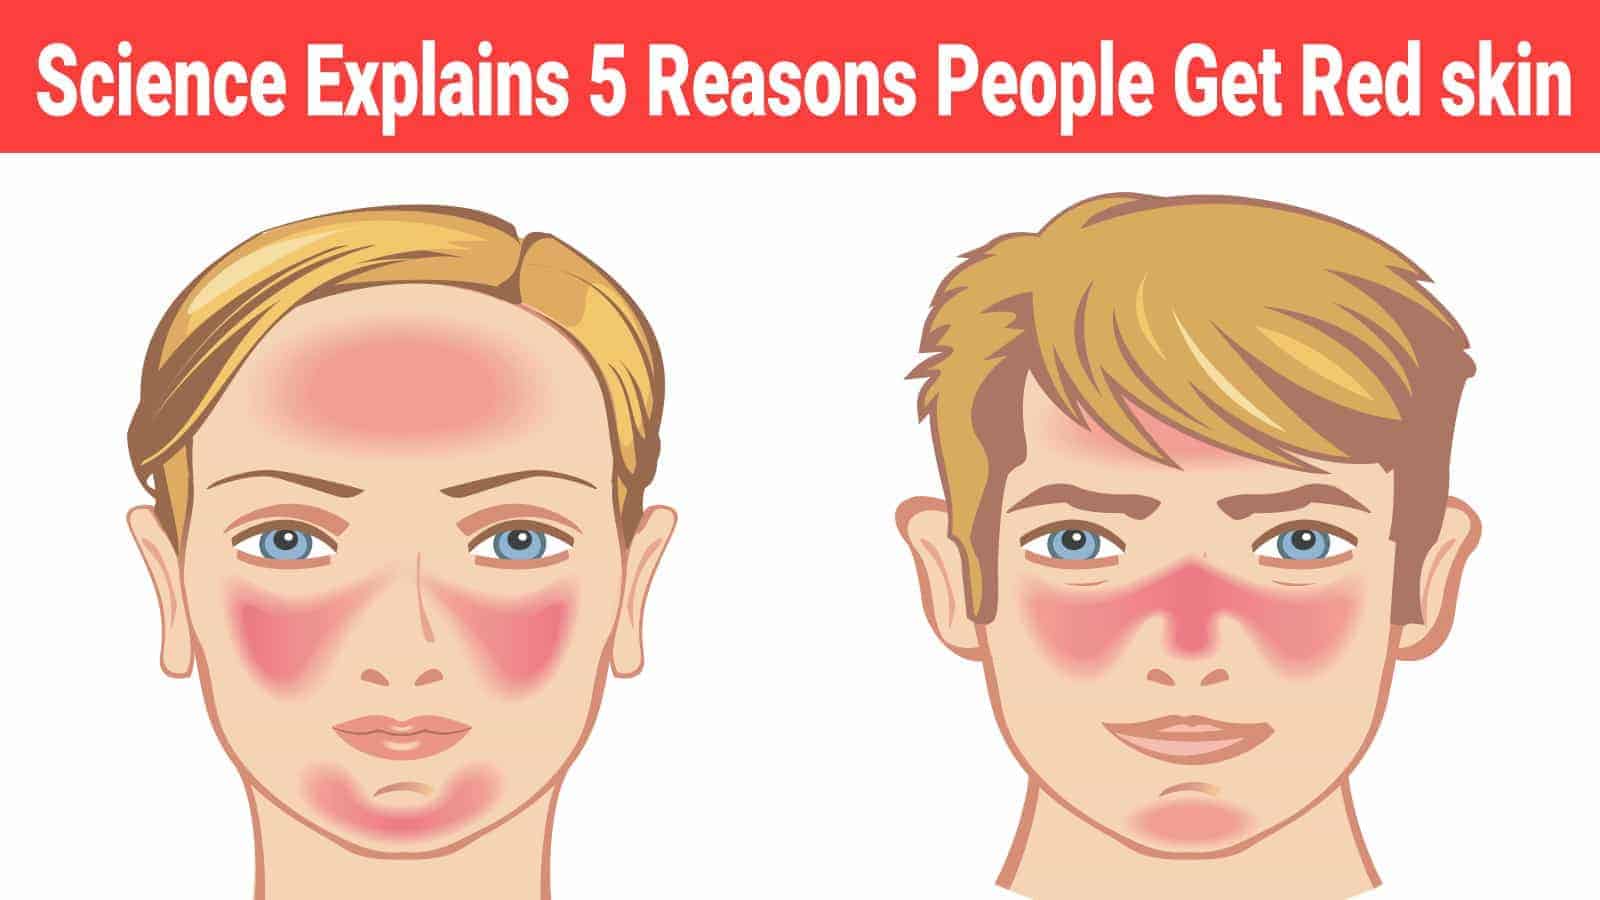 Science Explains 5 Reasons People Get Red skin